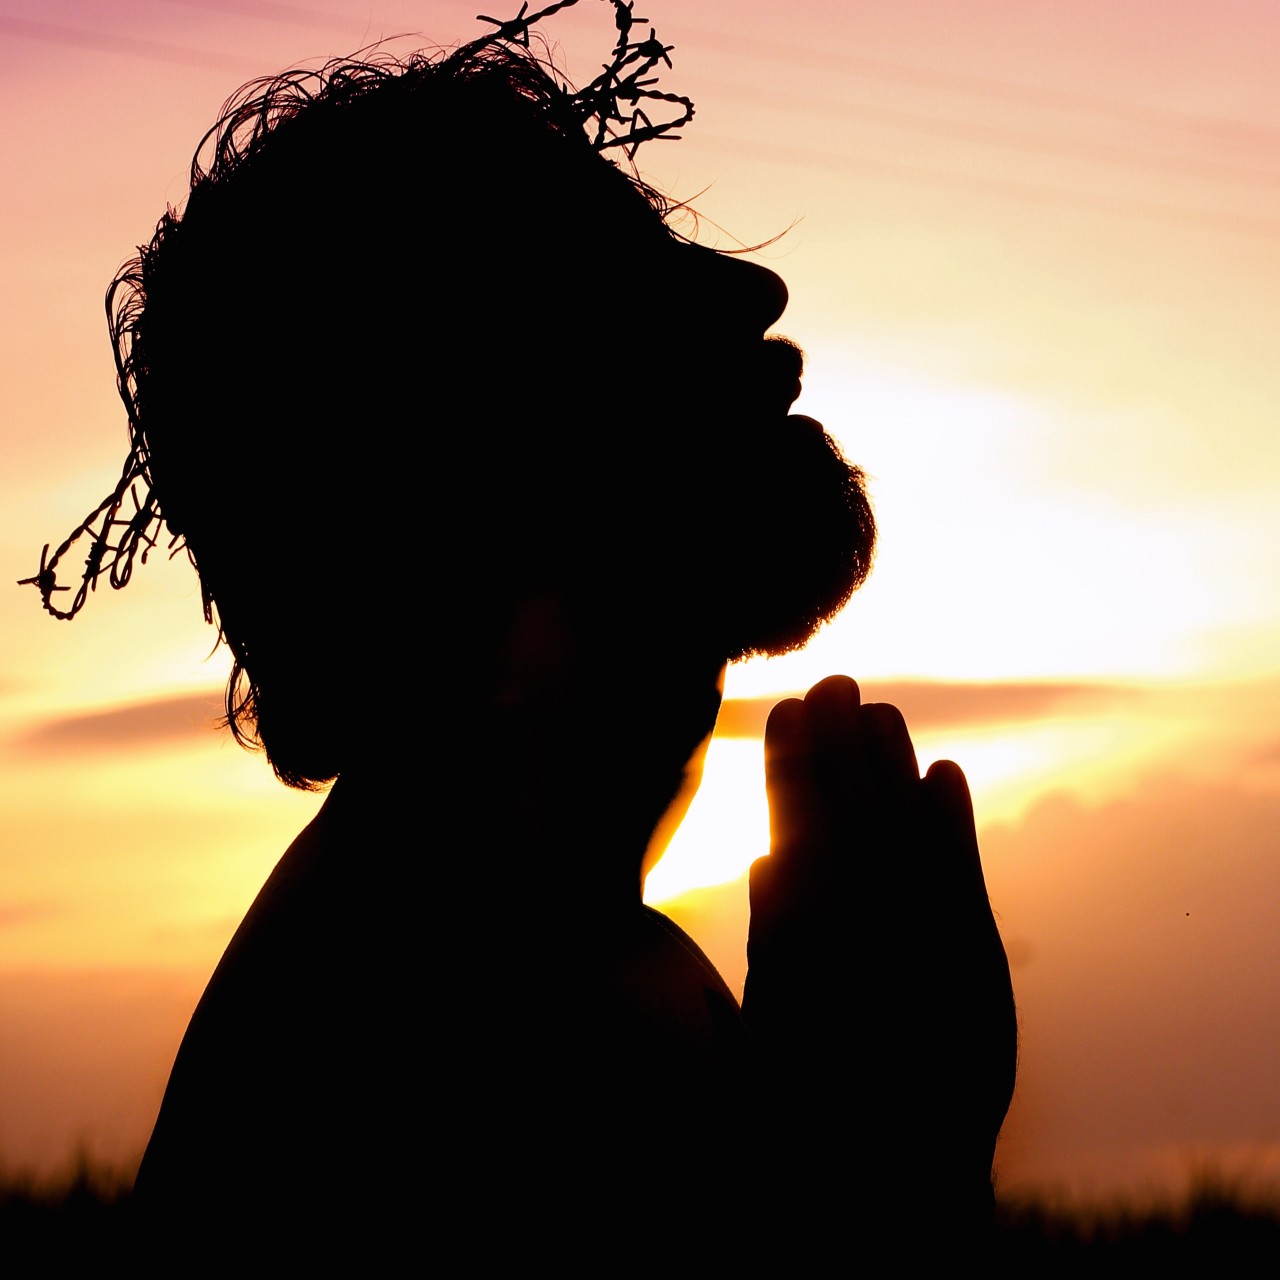 la importancia de orar siempre de rodiilas